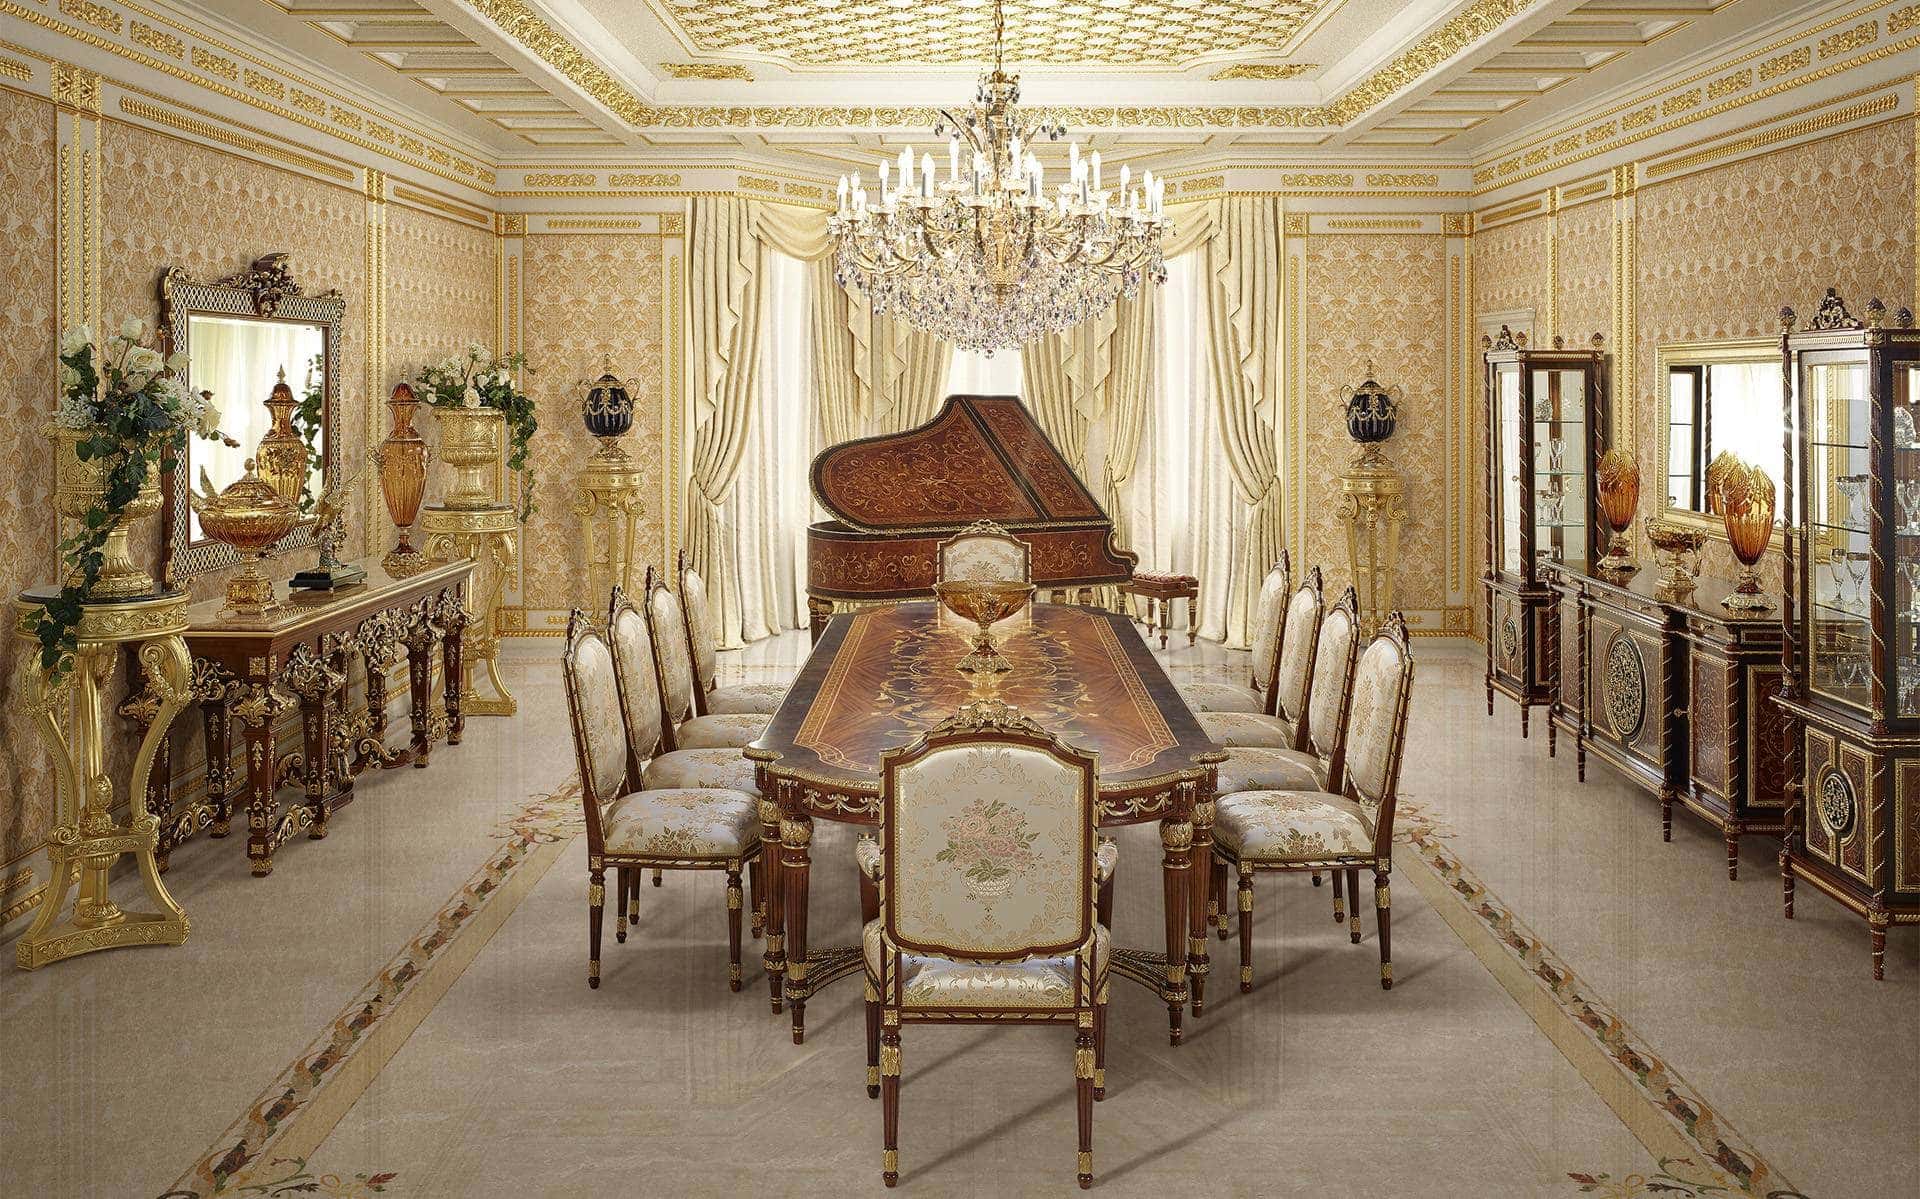 意大利帝国风格的顶级经典家具：优雅的餐桌、大气的座椅和扶手椅、定制的玻璃橱窗和餐具柜。适合大多数皇家别墅和宫殿氛围的豪华三角钢琴。手工镶嵌和装饰的餐桌。精选意大利制造的珍贵原材料，最优手工家具制作。意大利经典实木家具和最佳室内设计服务。